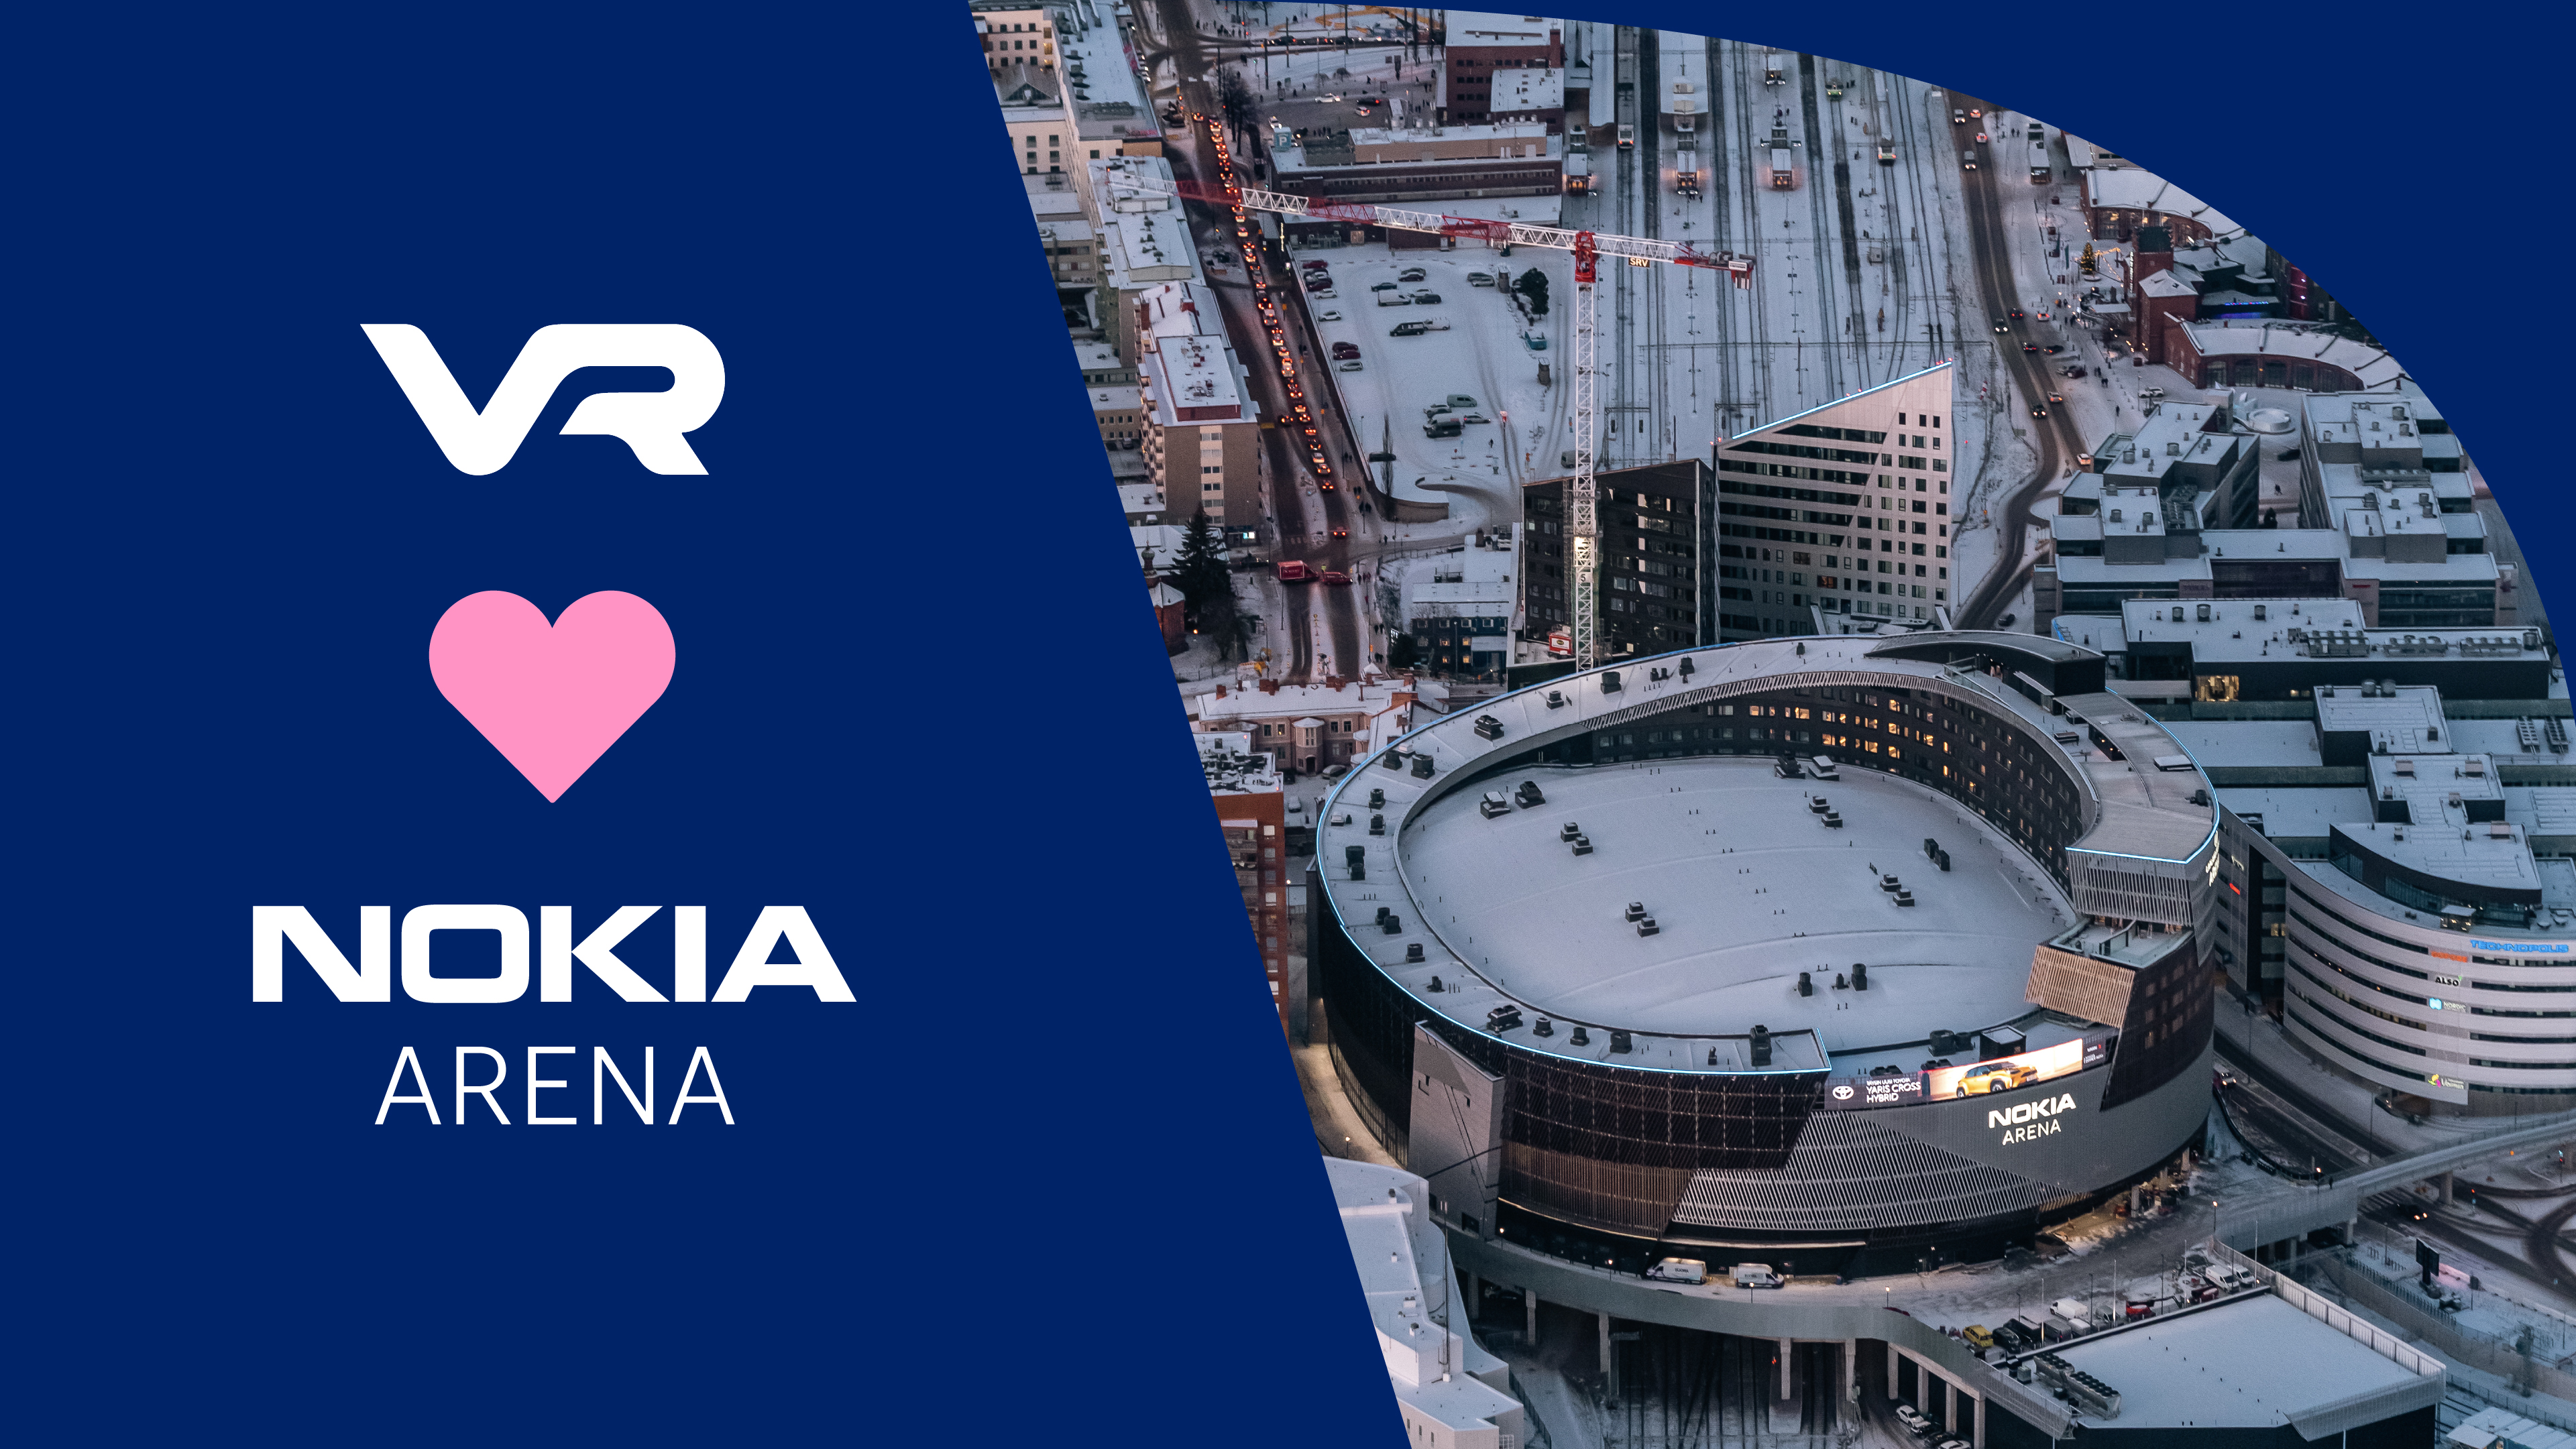 Nokia Arena sijaitsee Tampereen keskustassa, joten sinne on helppo saapua junalla.